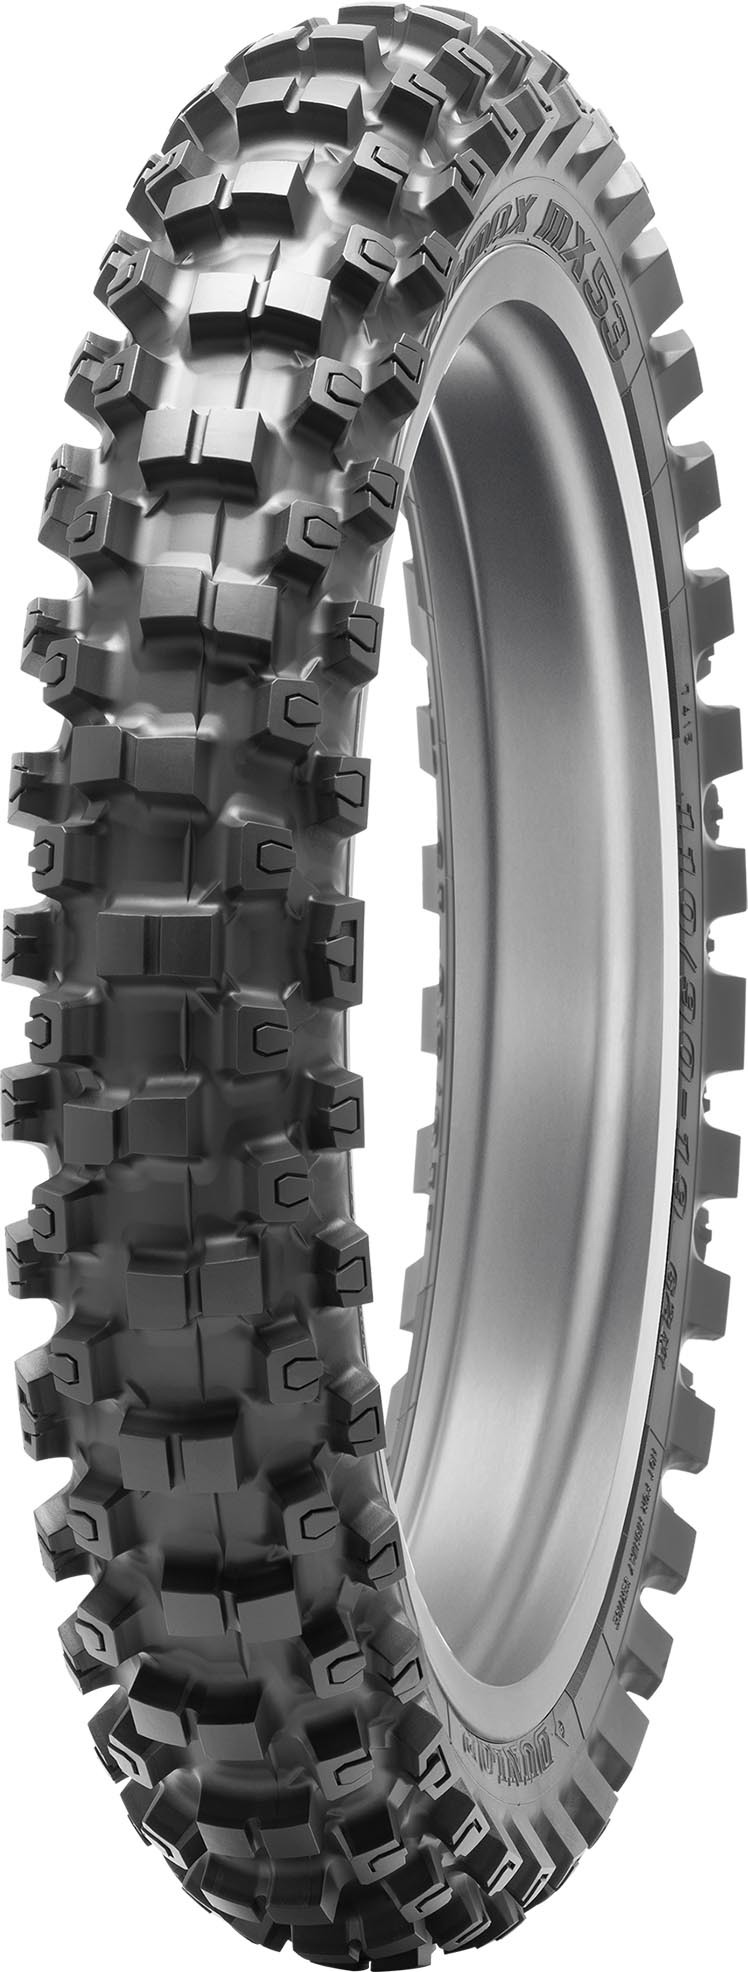 Dunlop - Tire Geomax Mx53 Rear 80/100-12 41m Bias Tt - 45236400